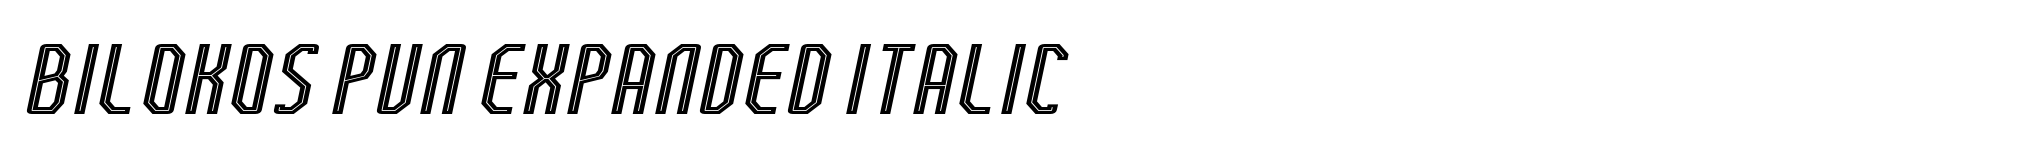 Bilokos Pun Expanded Italic image